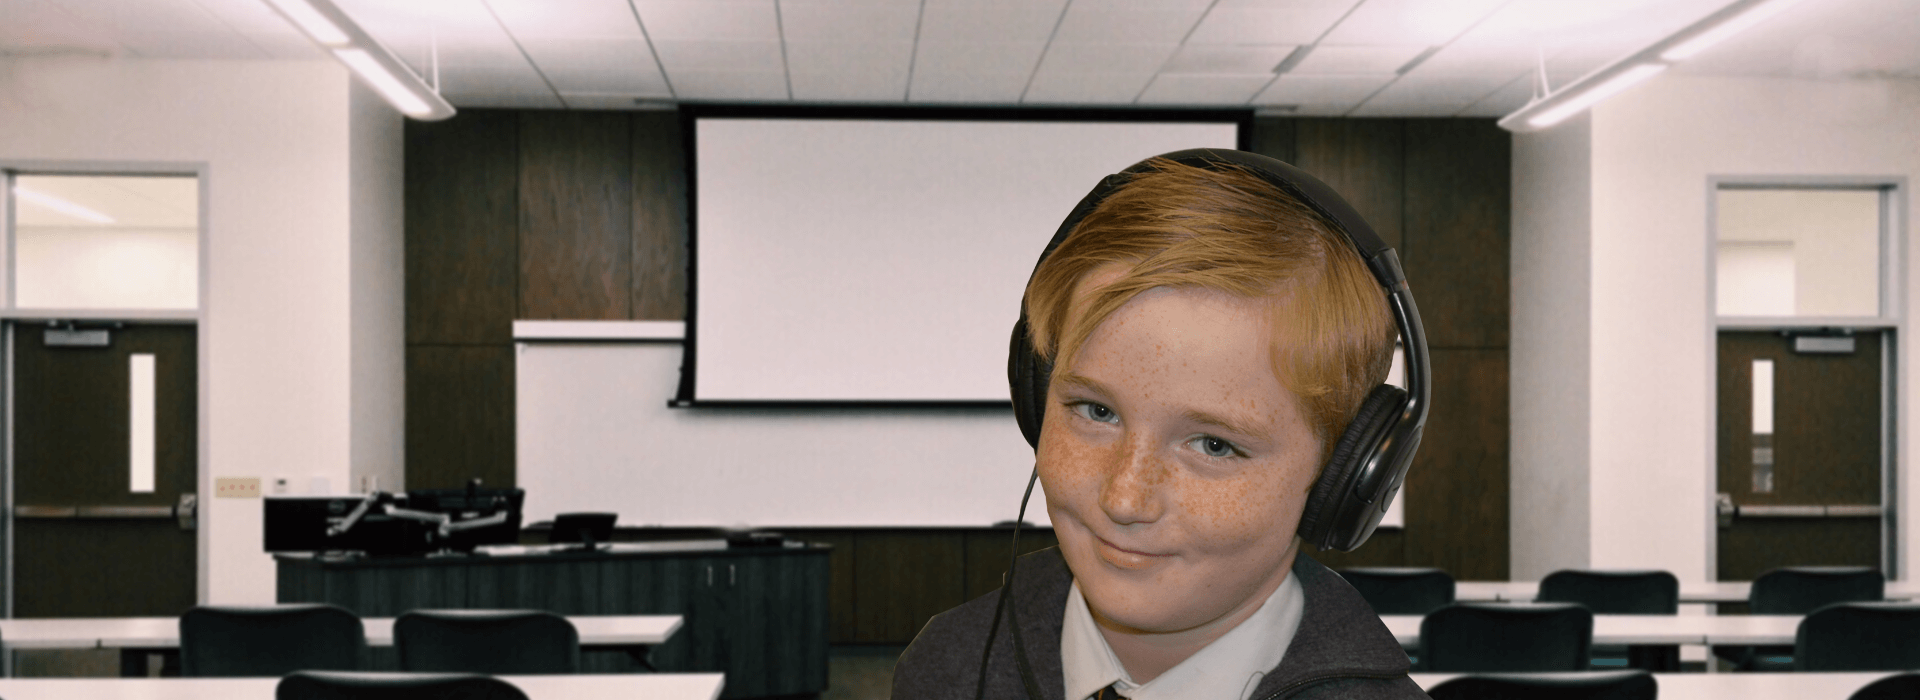 boy wearing headphones in classroom 